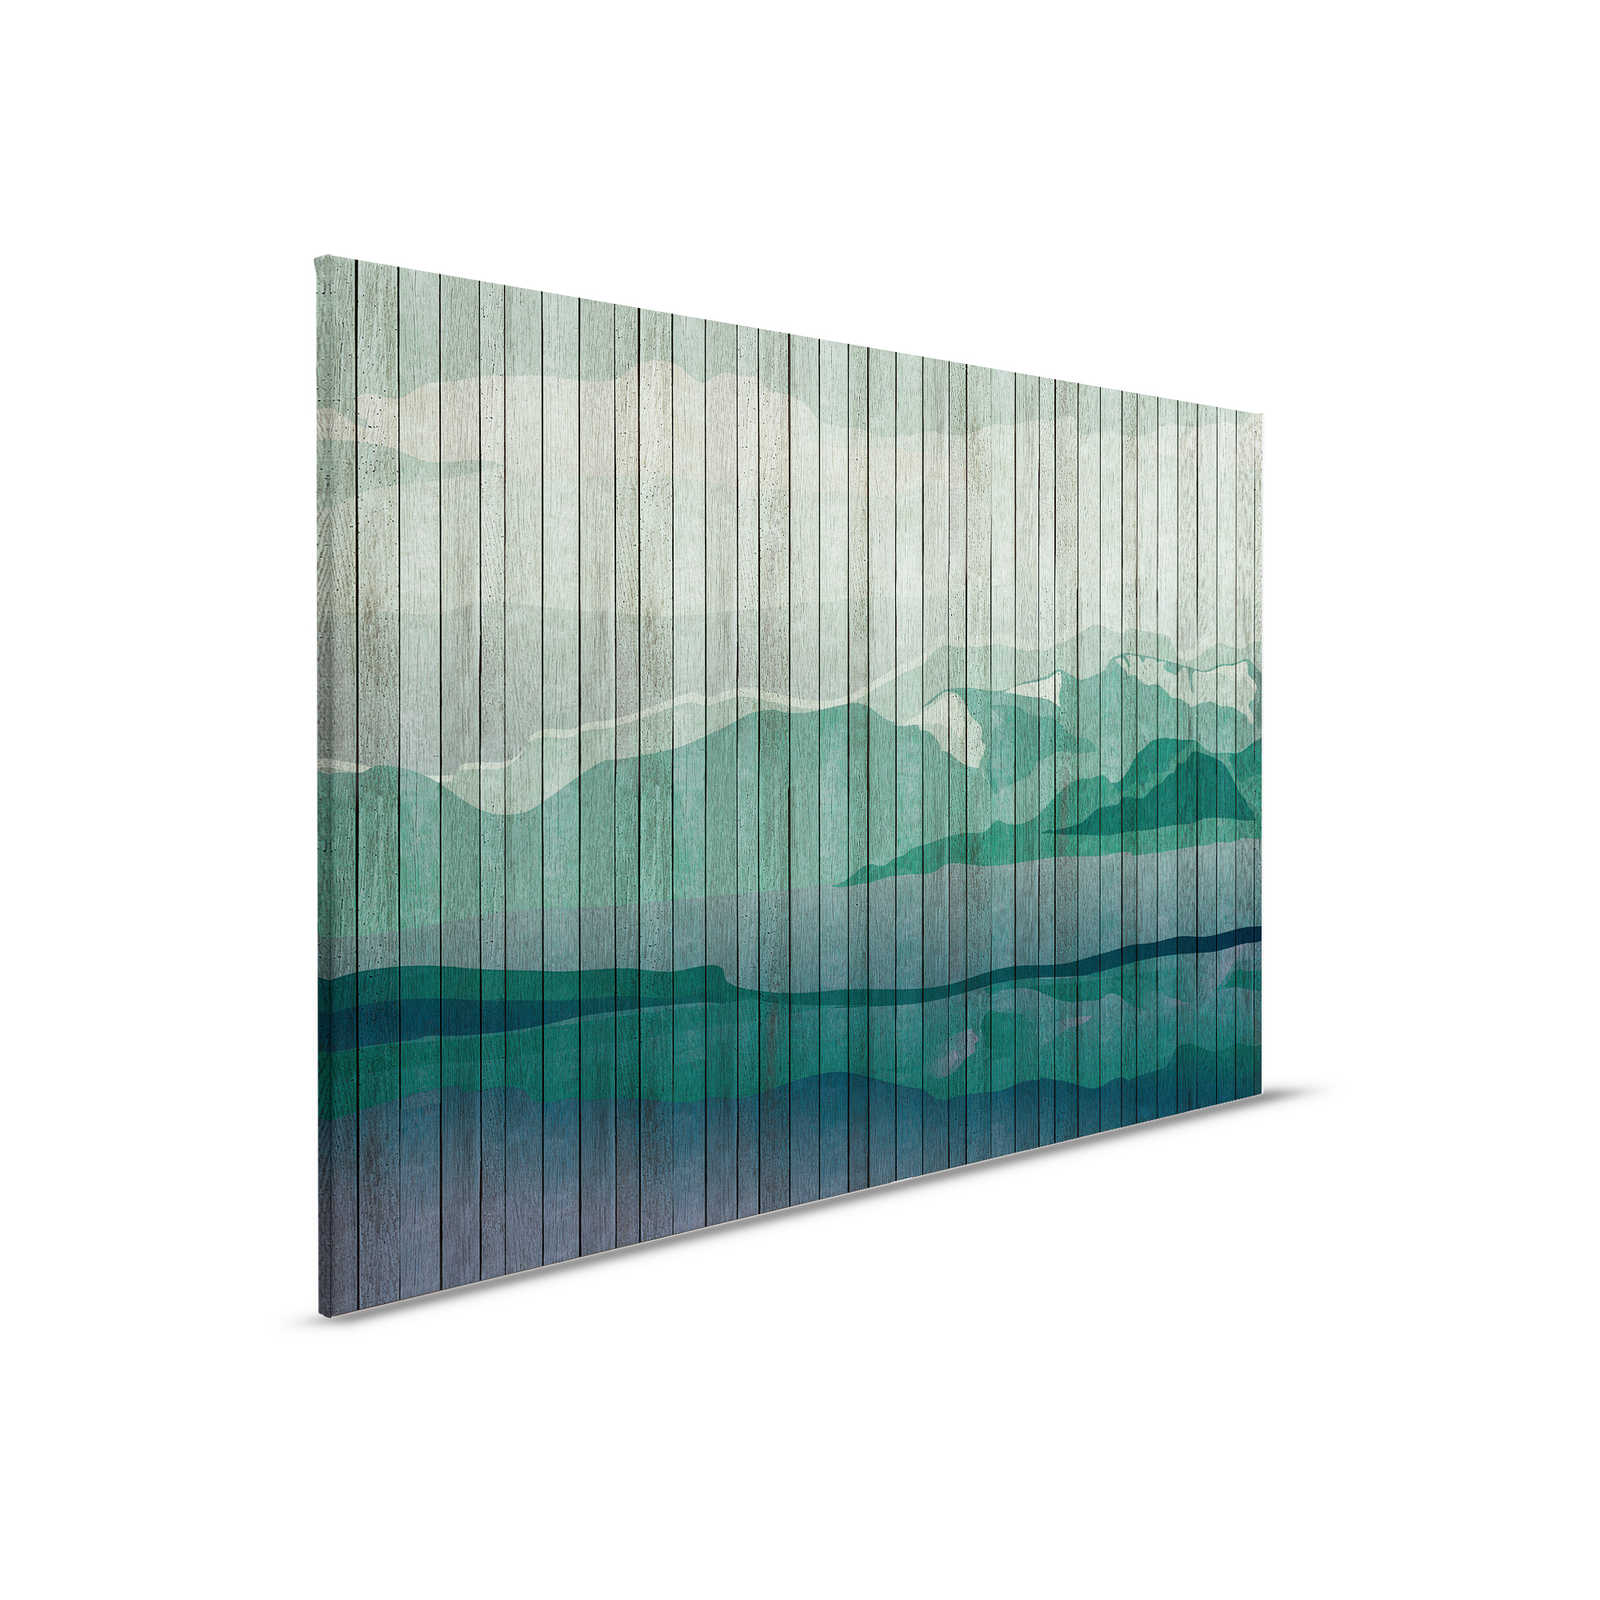 Mountains 3 - toile moderne paysage de montagne & aspect planche - 0,90 m x 0,60 m
